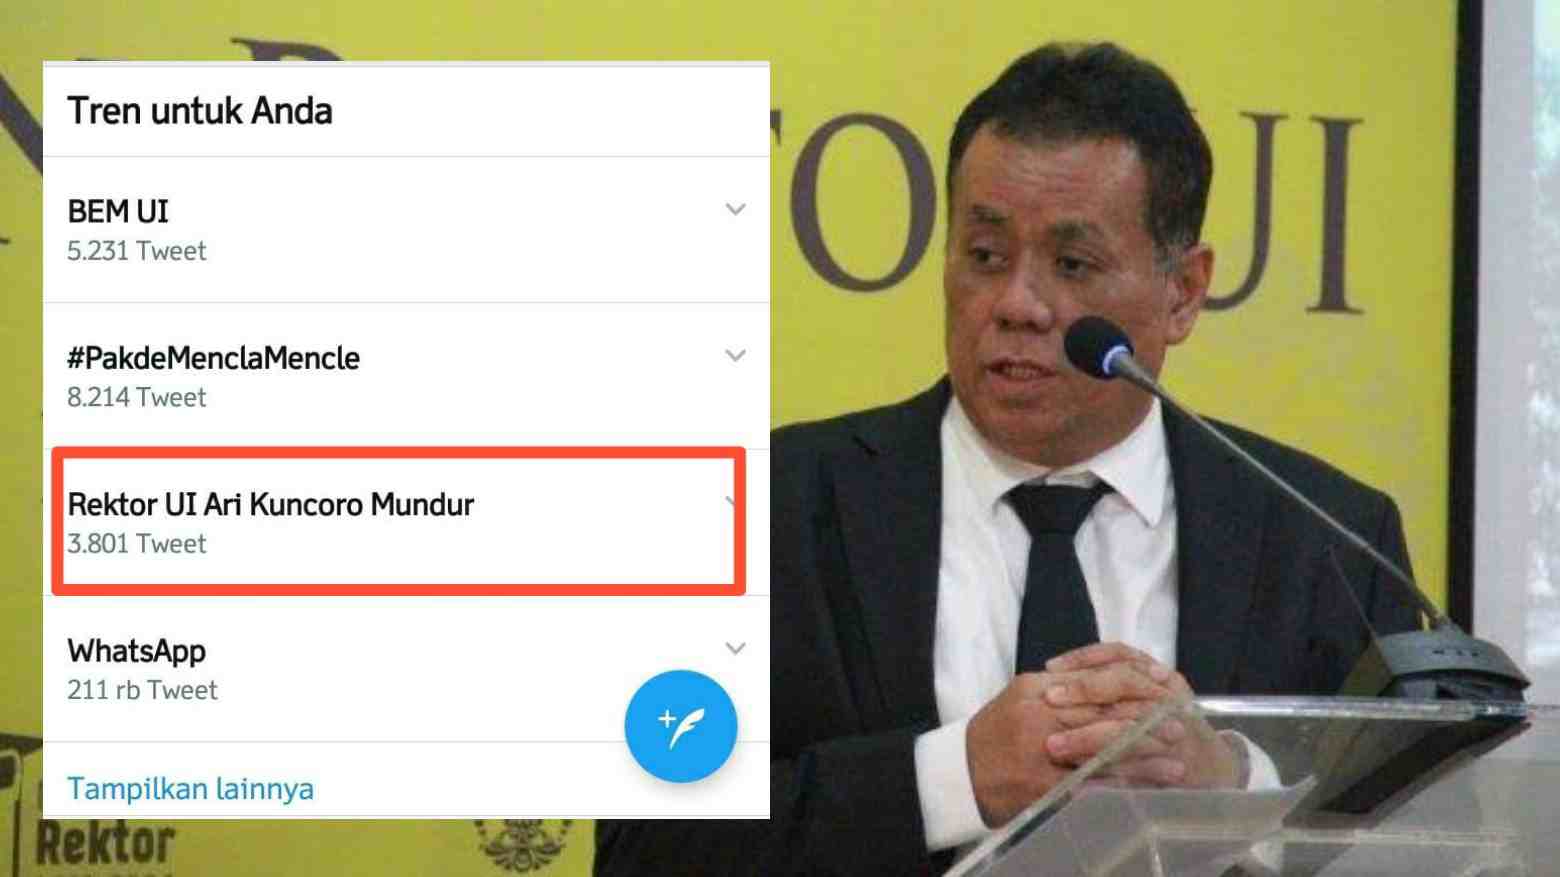 Rektor UI Mundur Trending Twitter: Perjuangan Netizen Tidak Sia-Sia